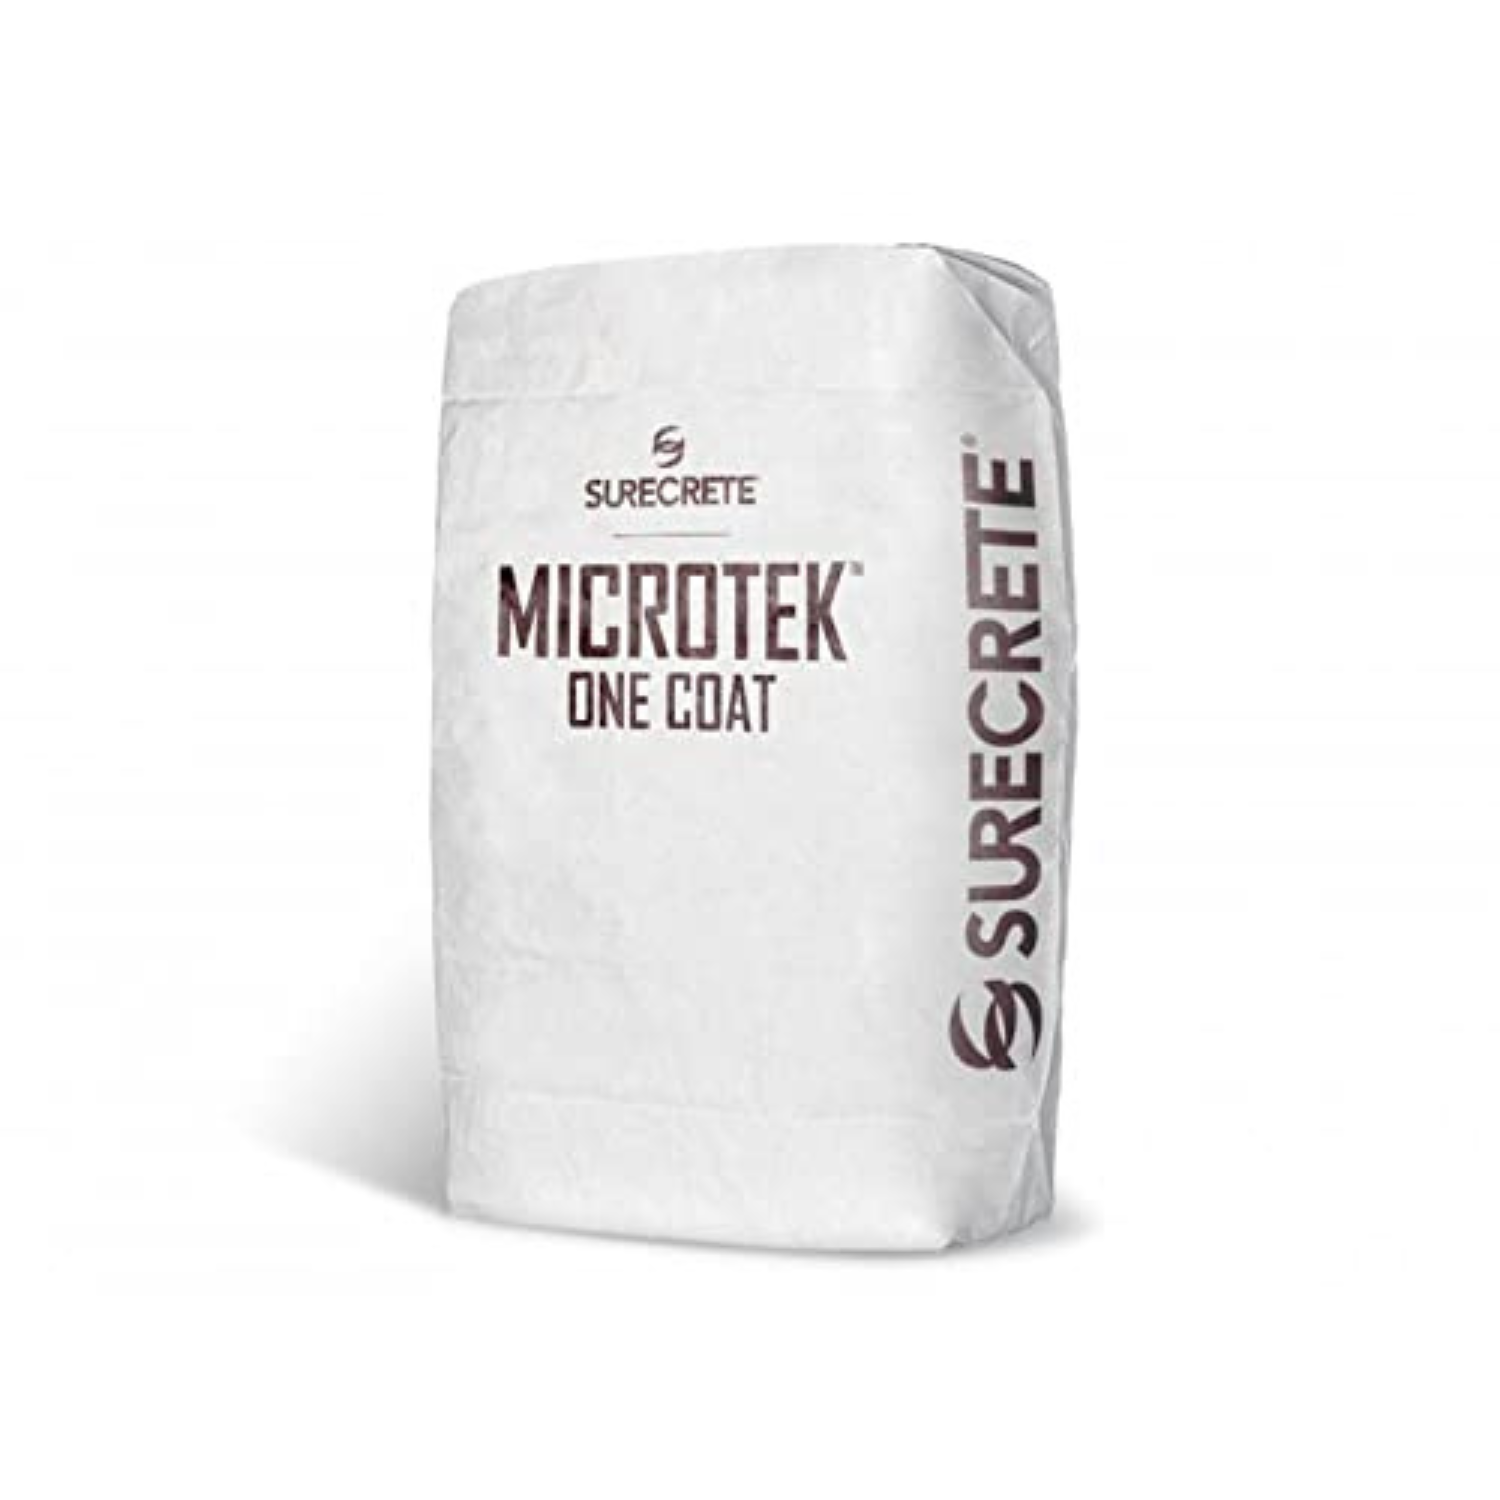 MicroTek One Coat Microcement